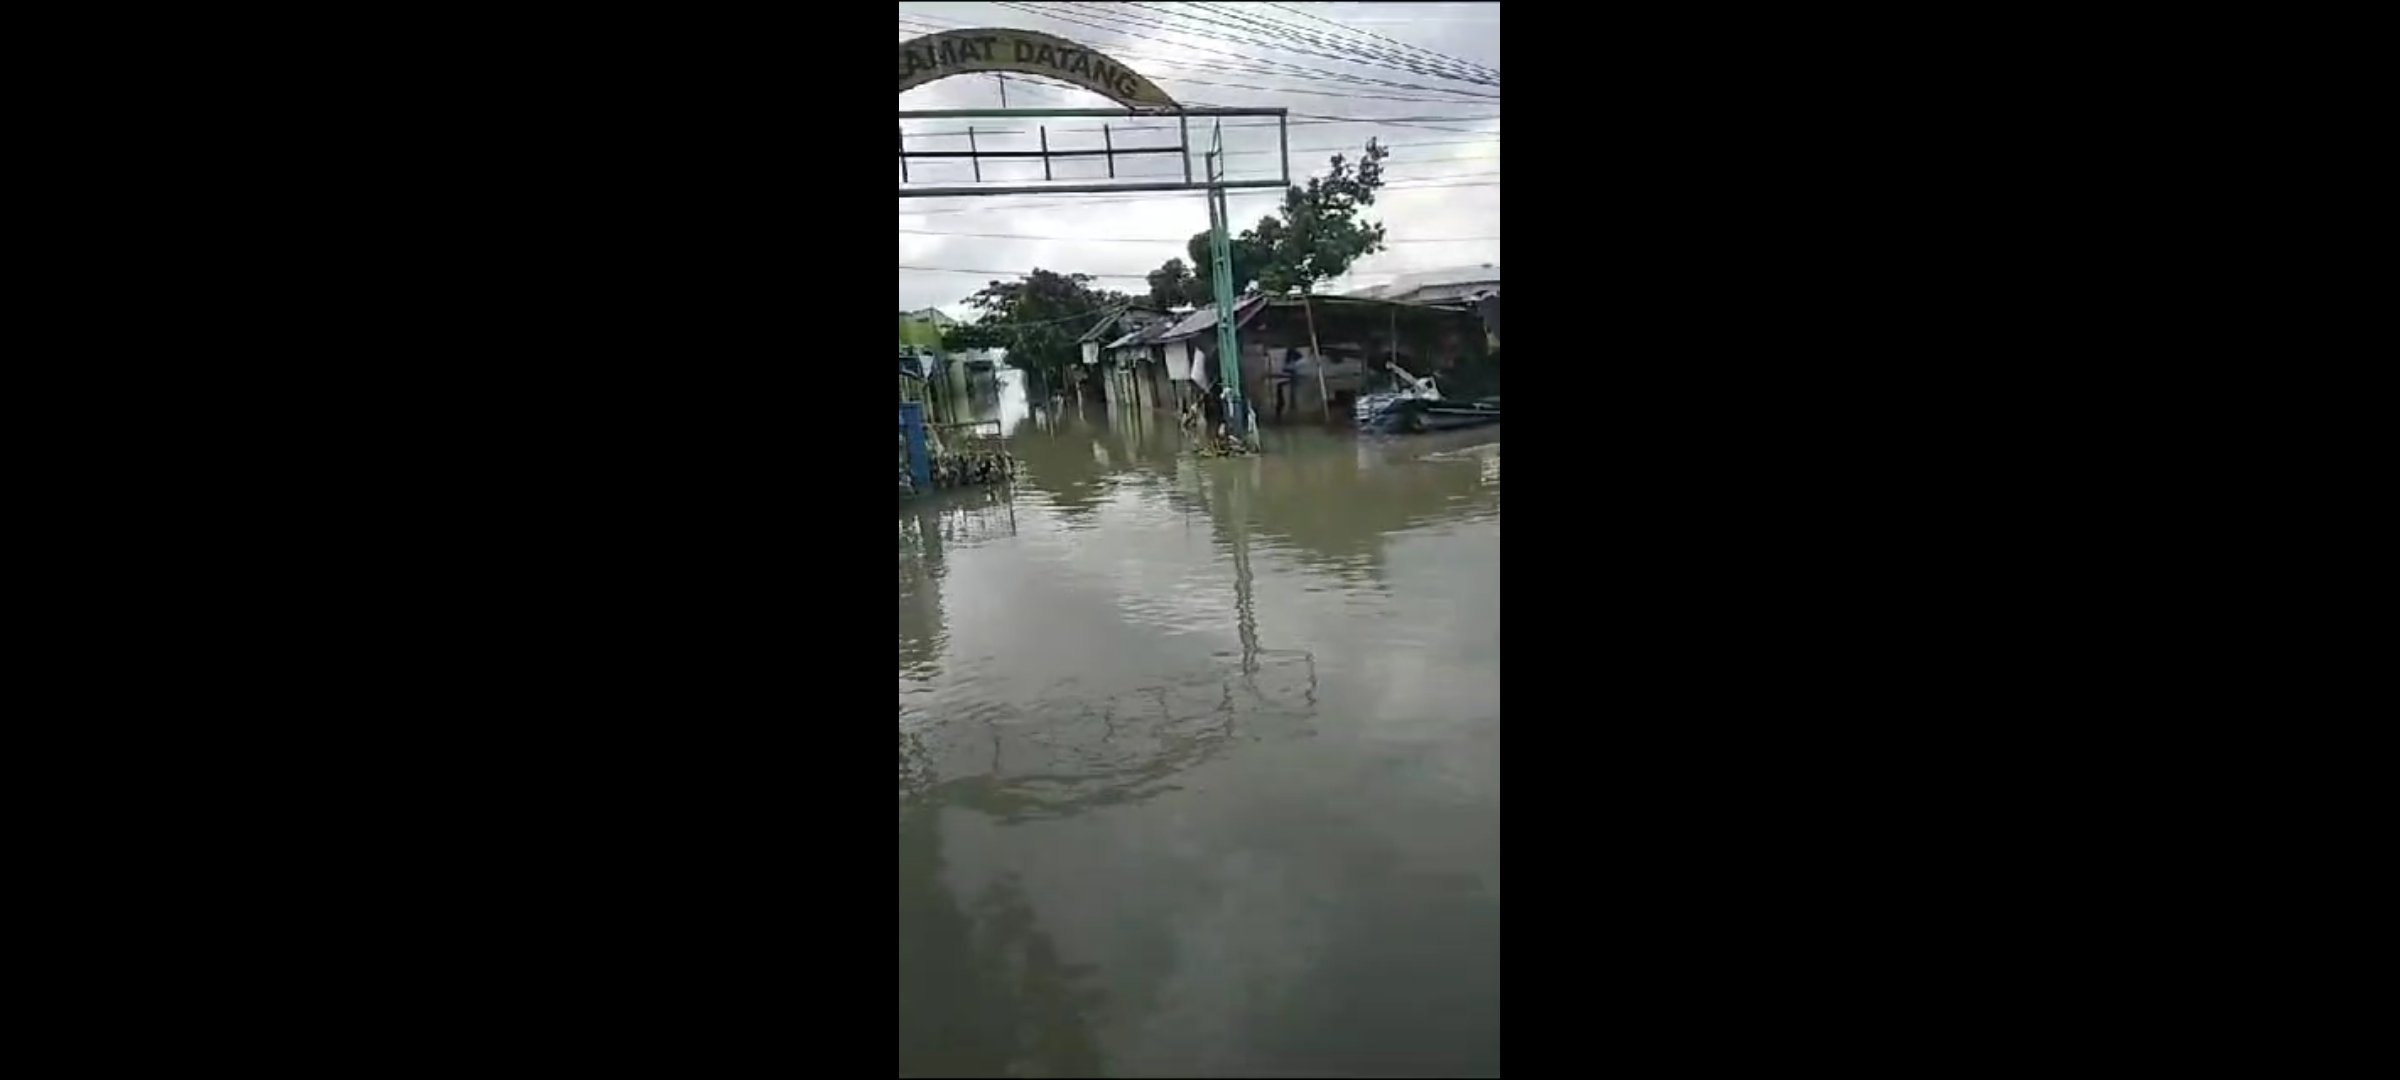 Penampakan banjir yang mulai surut di wilayah Karanganyar, Demak, Jawa Tengah (Sinpo.id/BNPB)